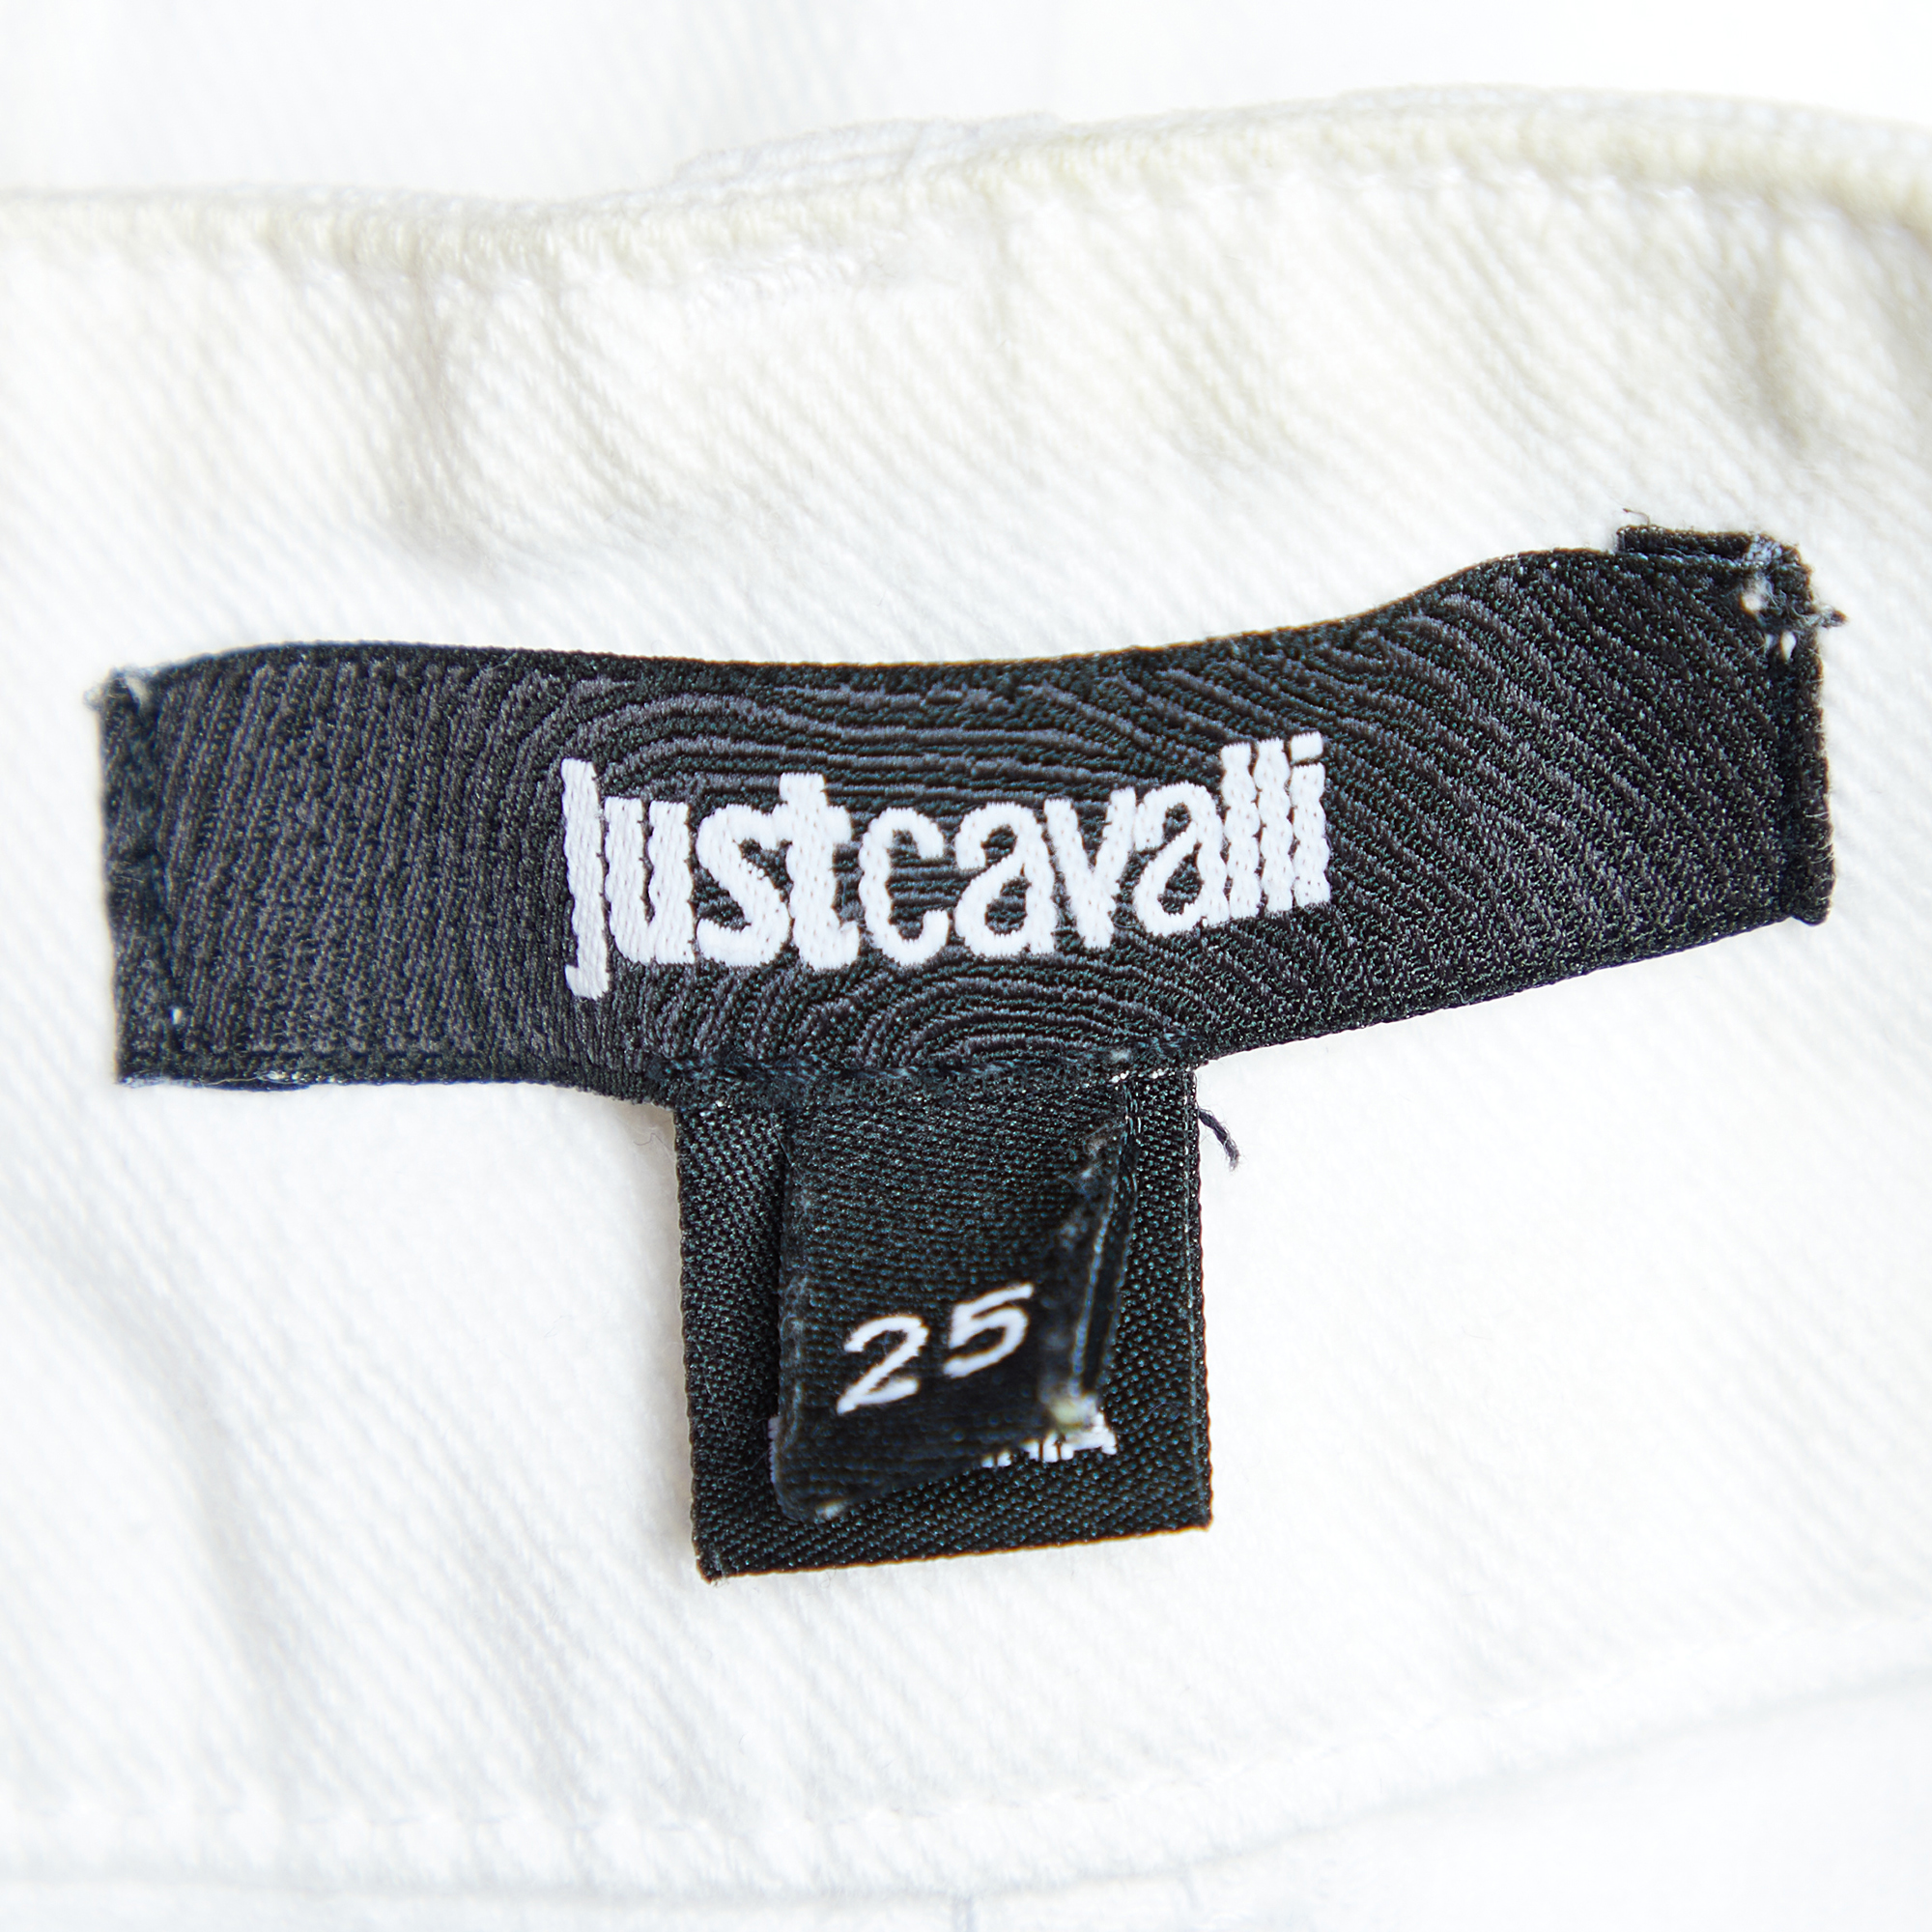 Just Cavalli White Denim Cropped Jeans S Waist 30